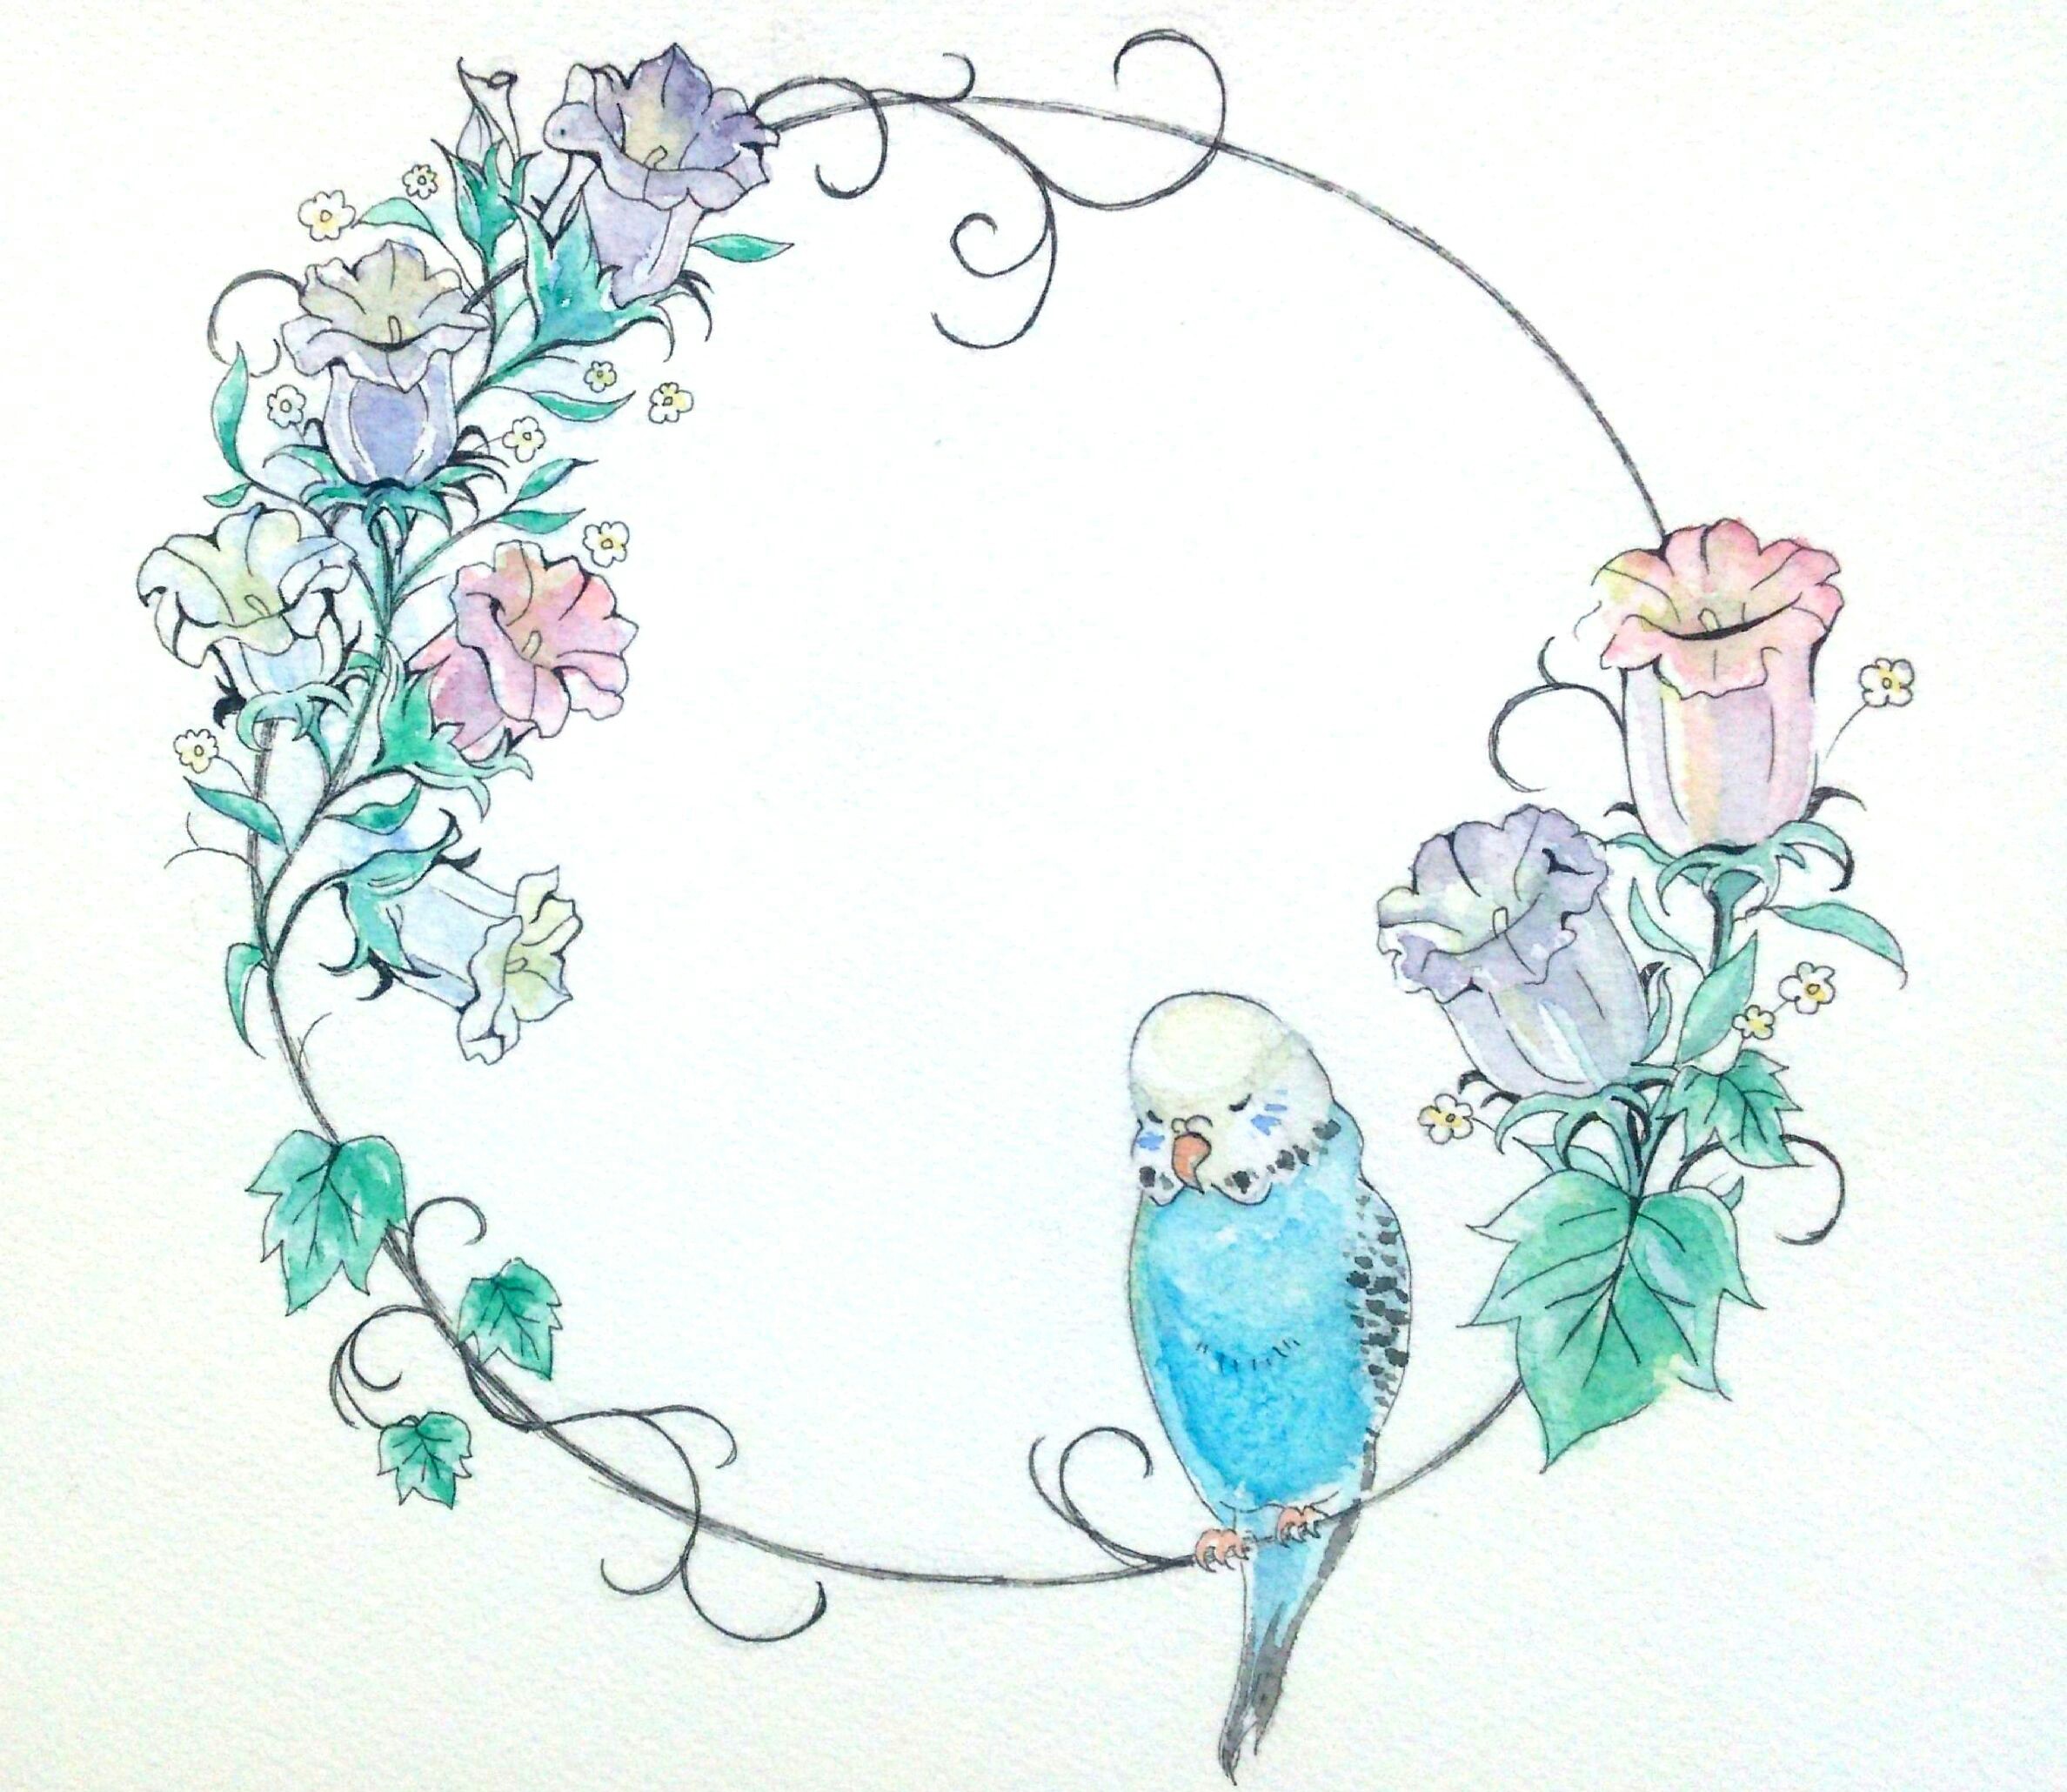 かわいい動物画像 綺麗な青い鳥 イラスト 綺麗